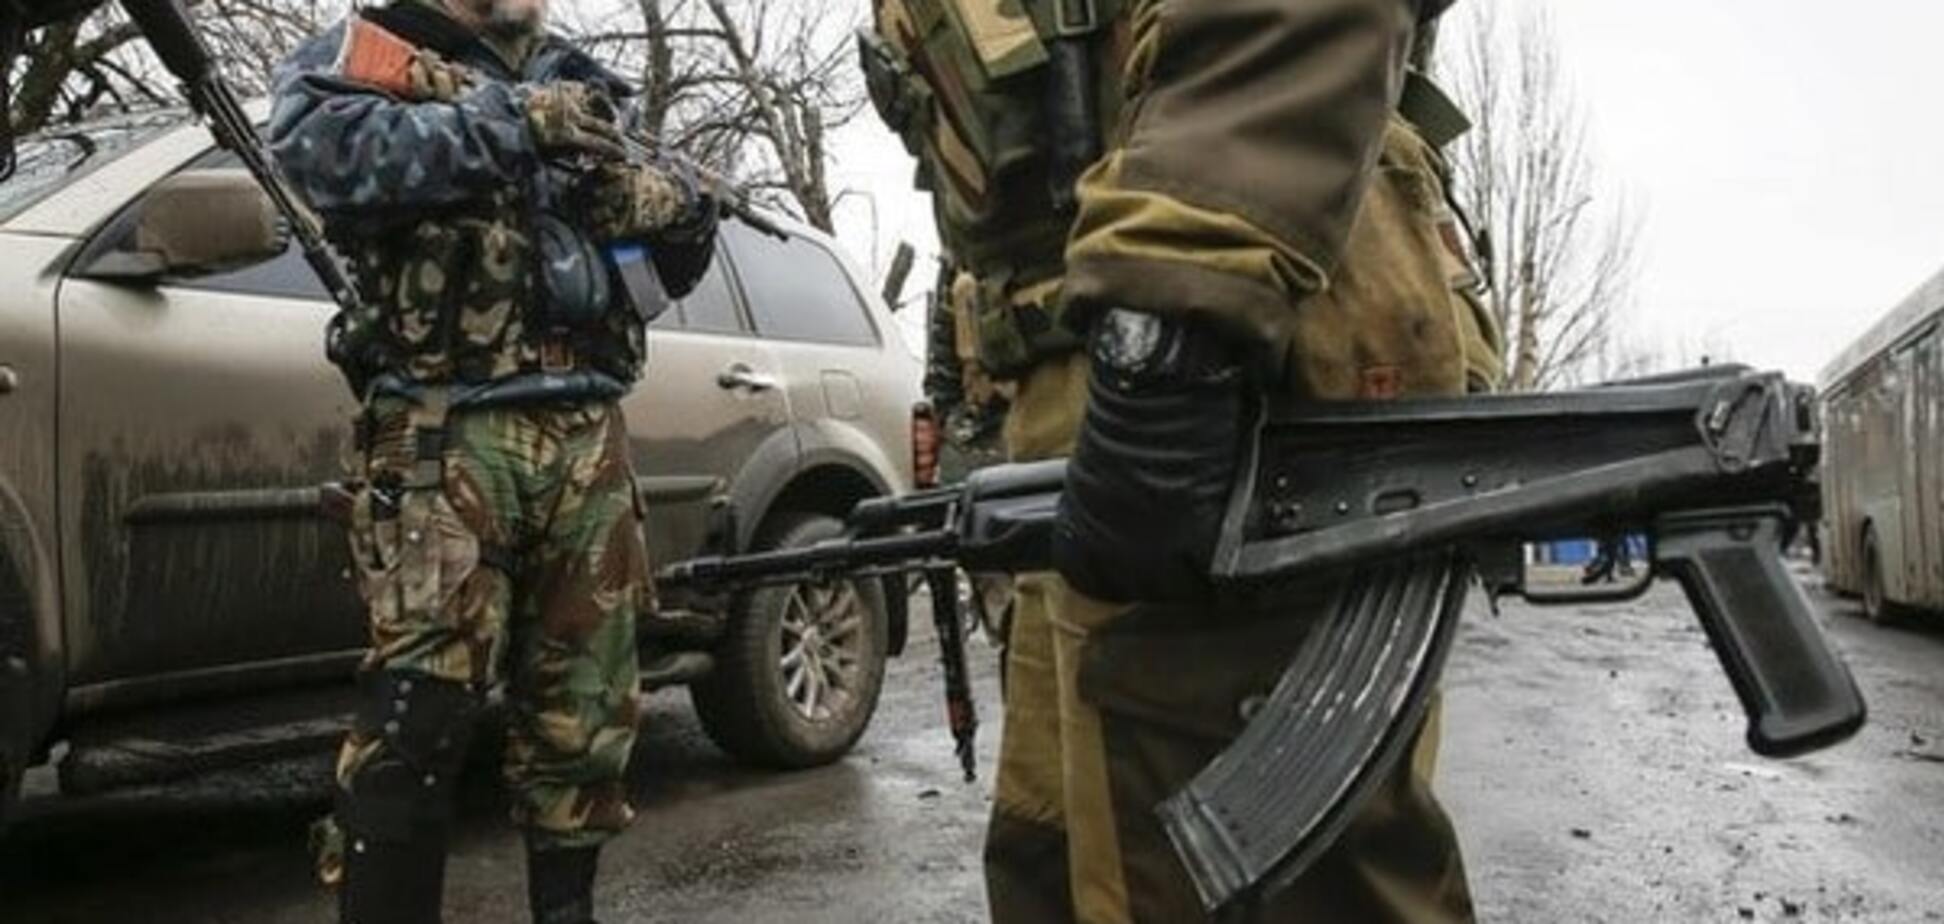 Чекають пільг та пенсій: бойовики Донбасу розраховують, що Держдума визнає їх ветеранами 